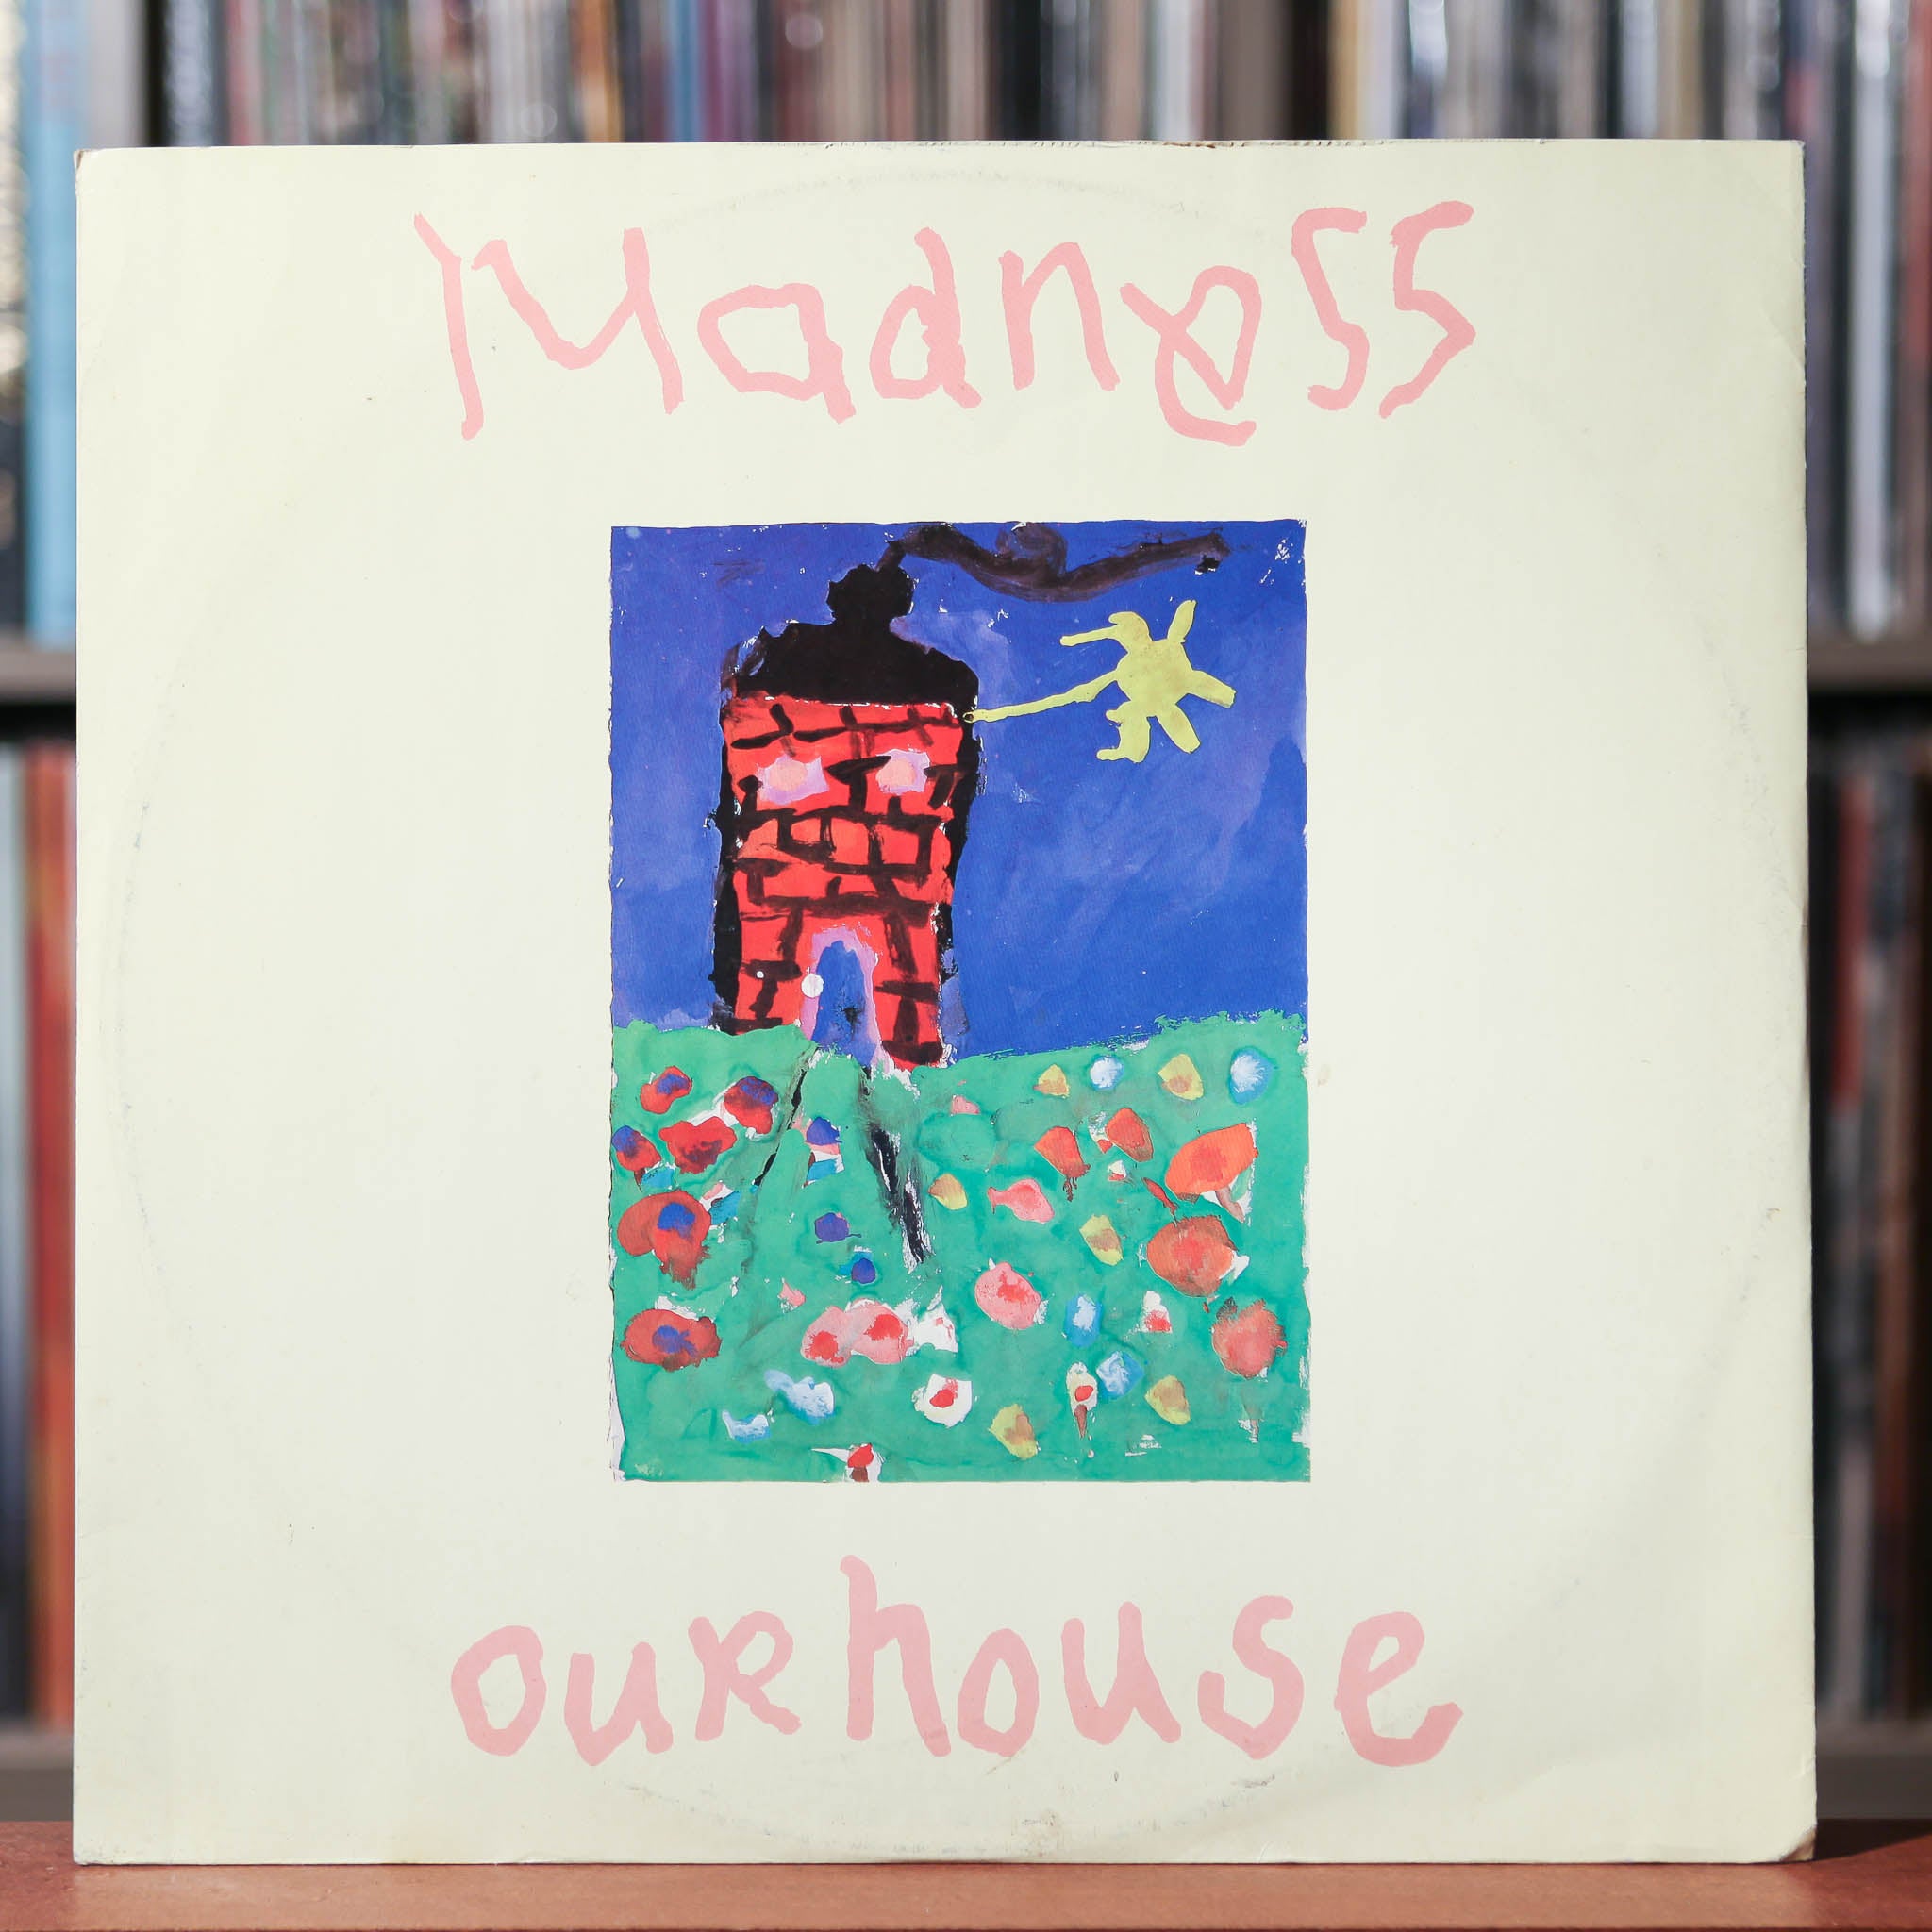 madness our house album cover